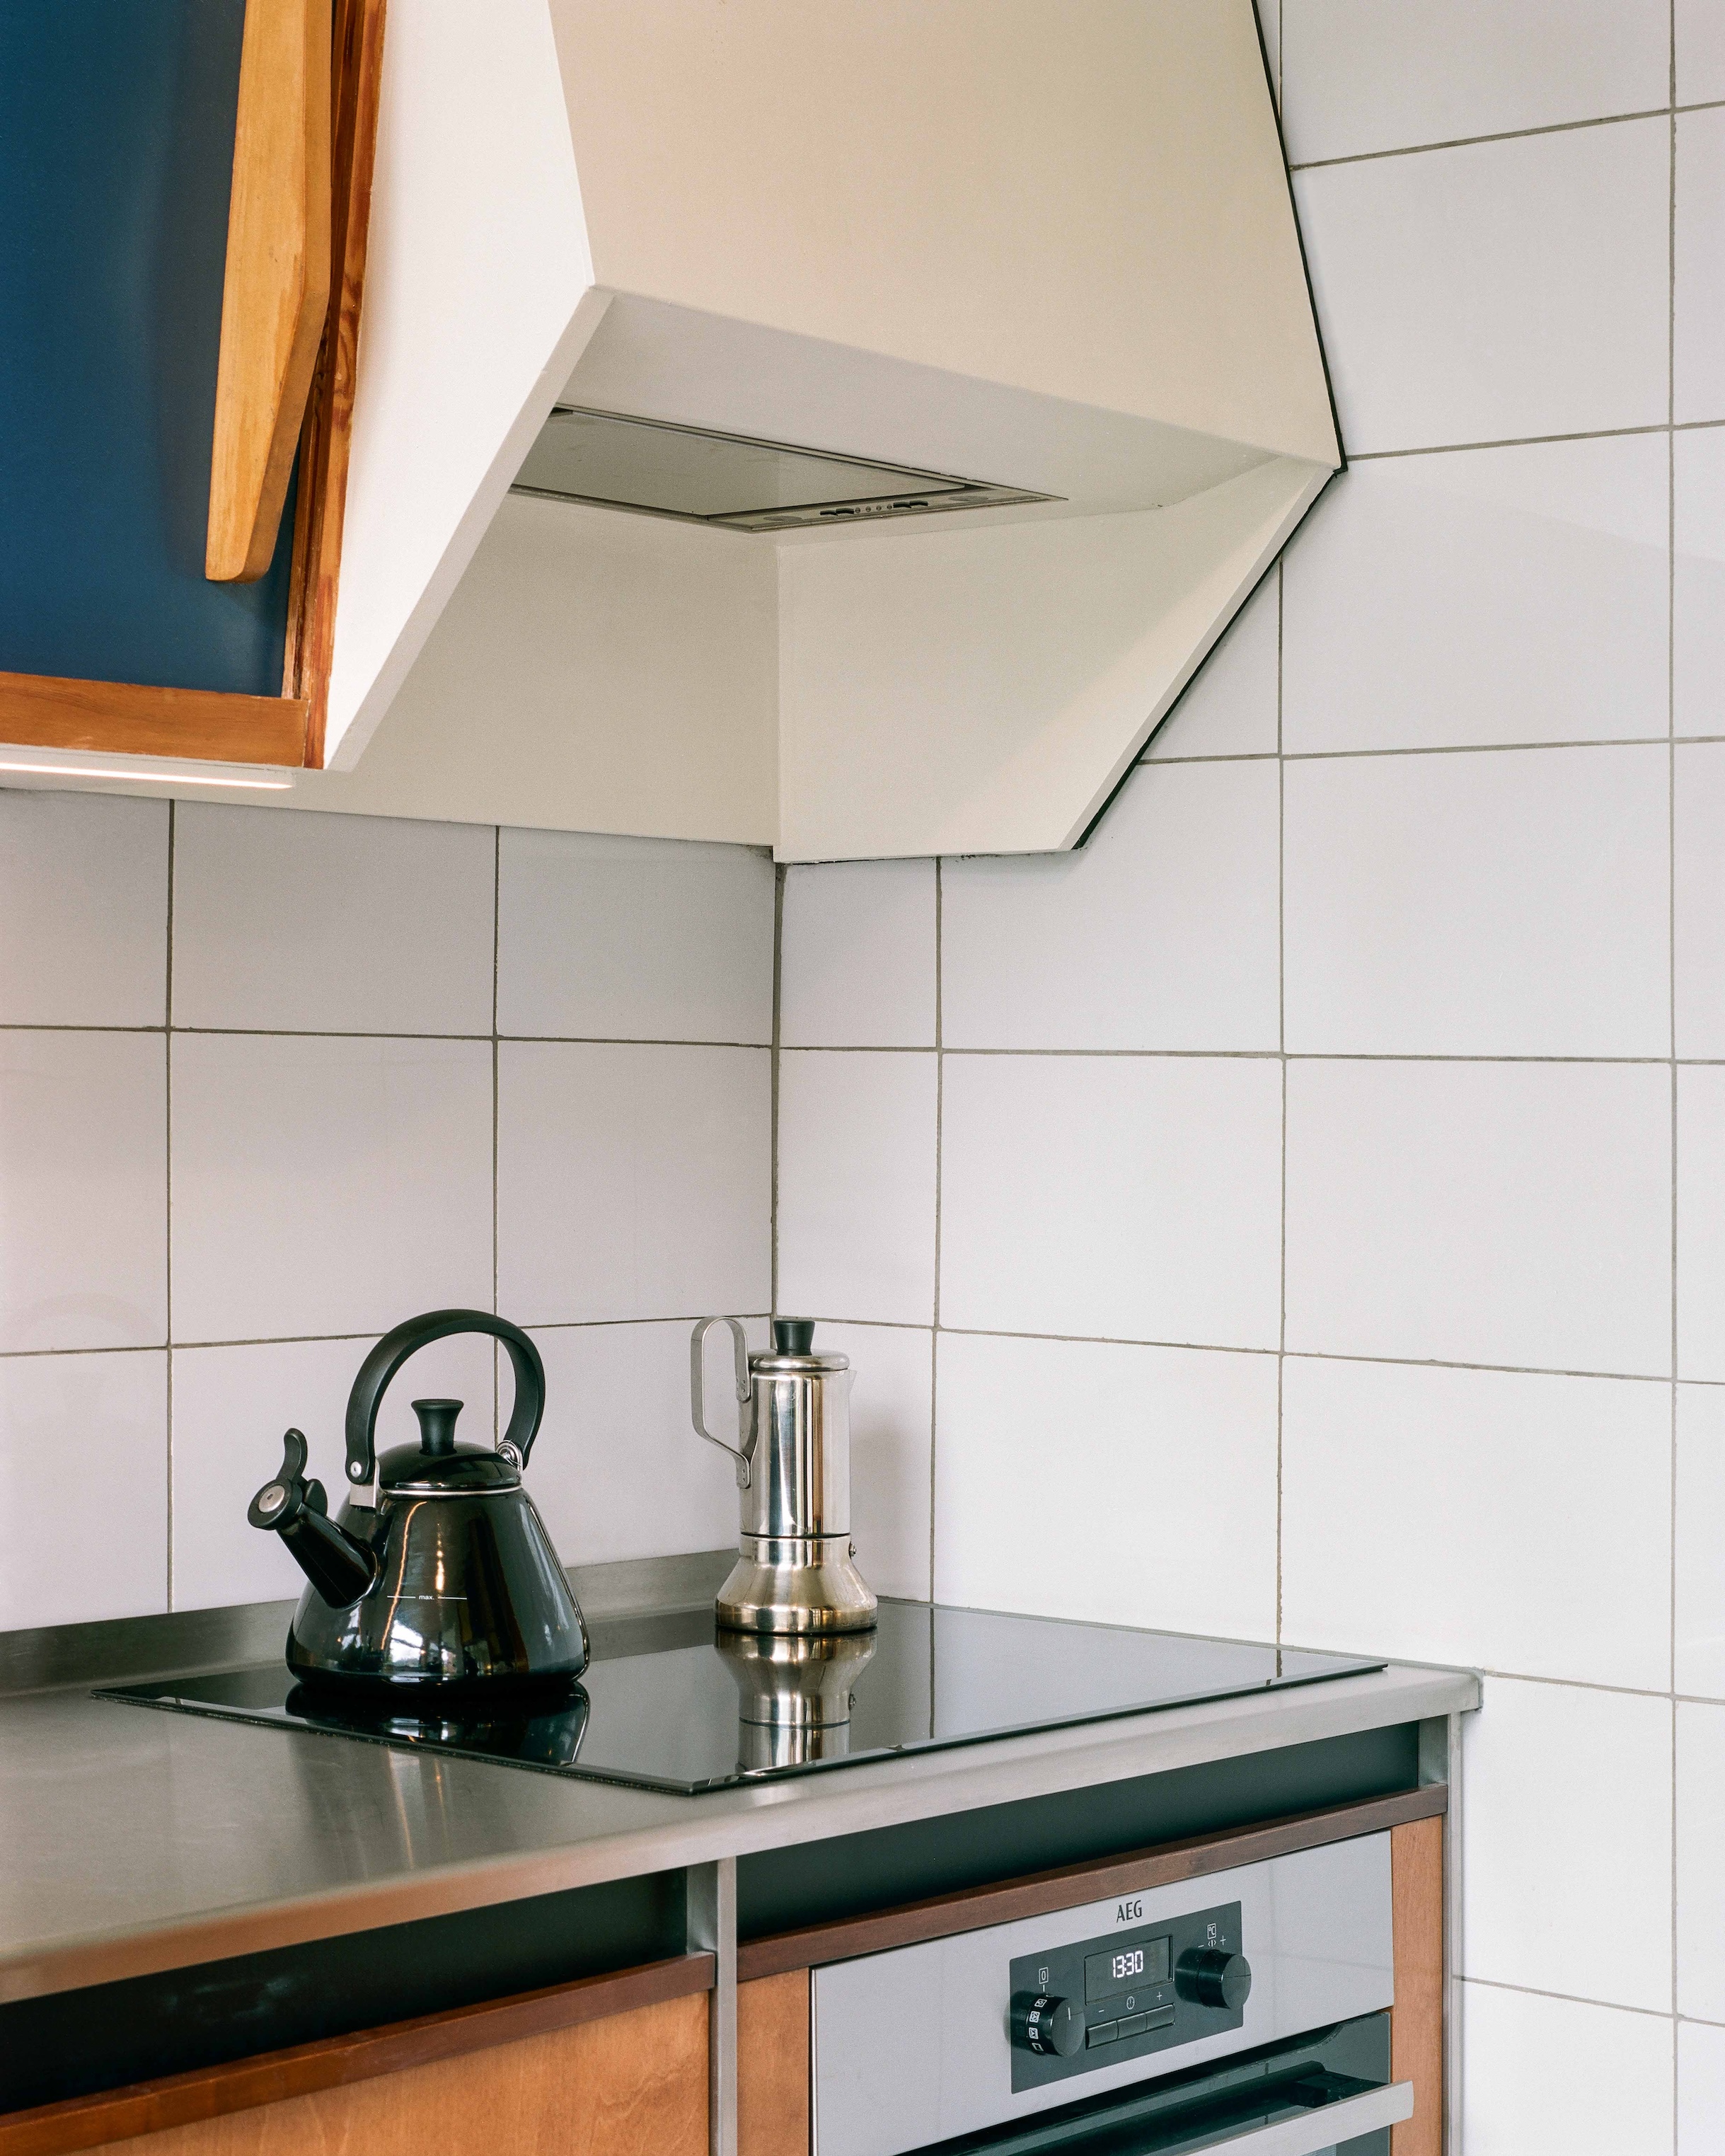 willy van der meeren 1960s kitchen in belgium updated by atelier avondzon. 274